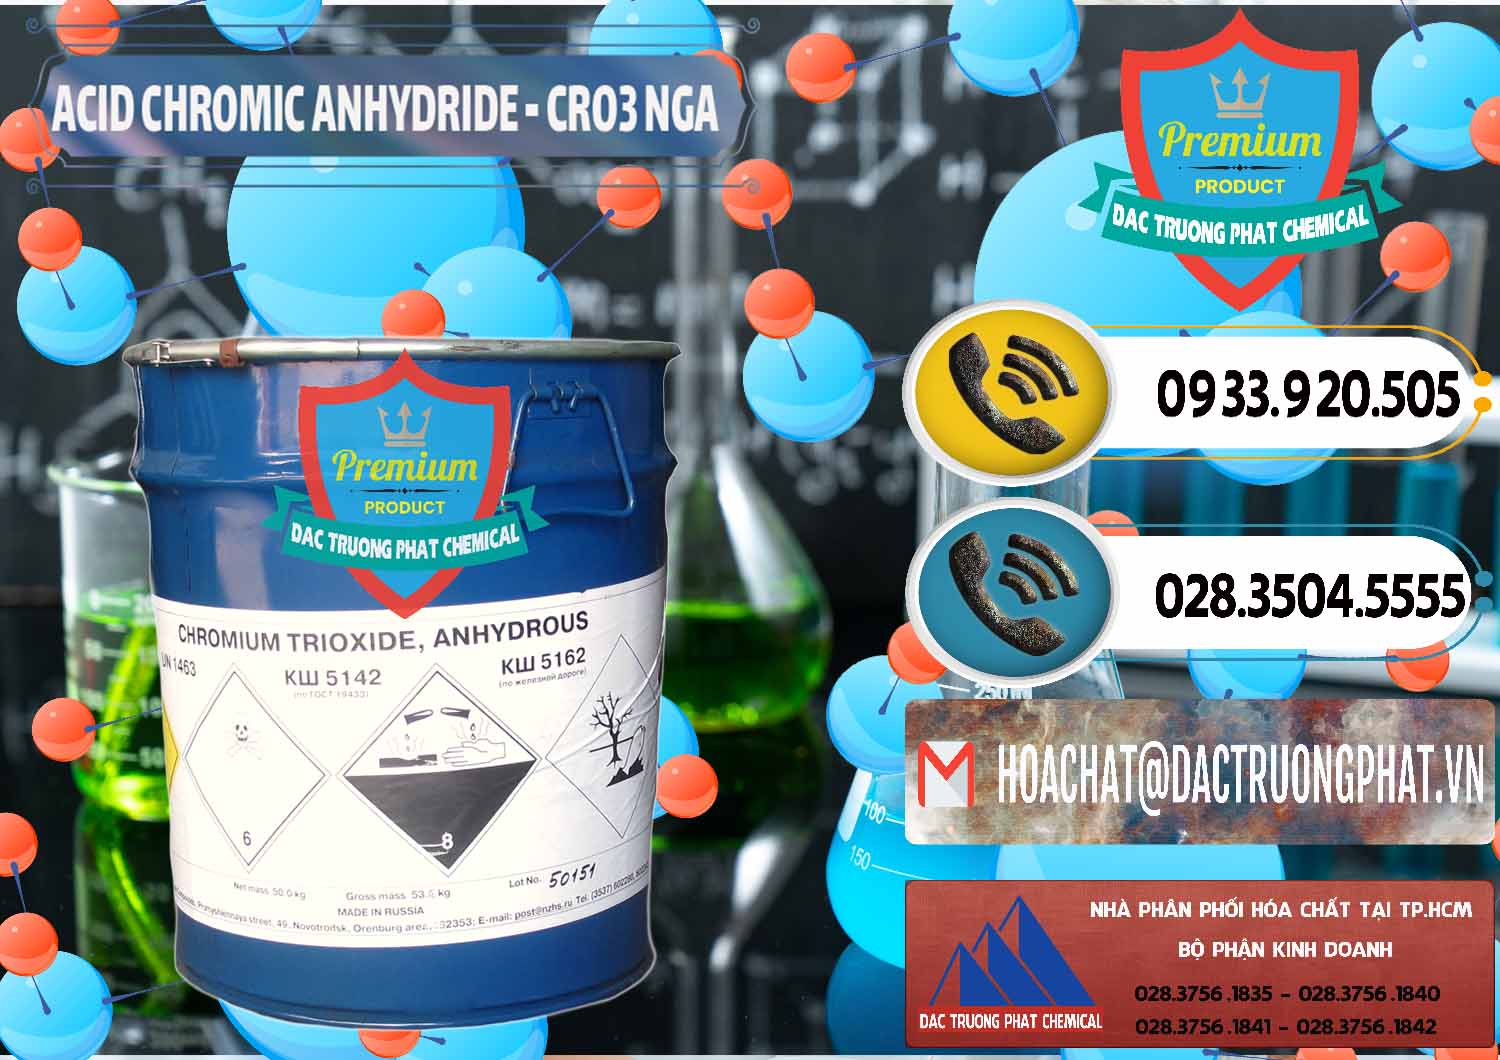 Công ty bán và cung cấp Acid Chromic Anhydride - Cromic CRO3 Nga Russia - 0006 - Đơn vị chuyên cung cấp & kinh doanh hóa chất tại TP.HCM - hoachatdetnhuom.vn